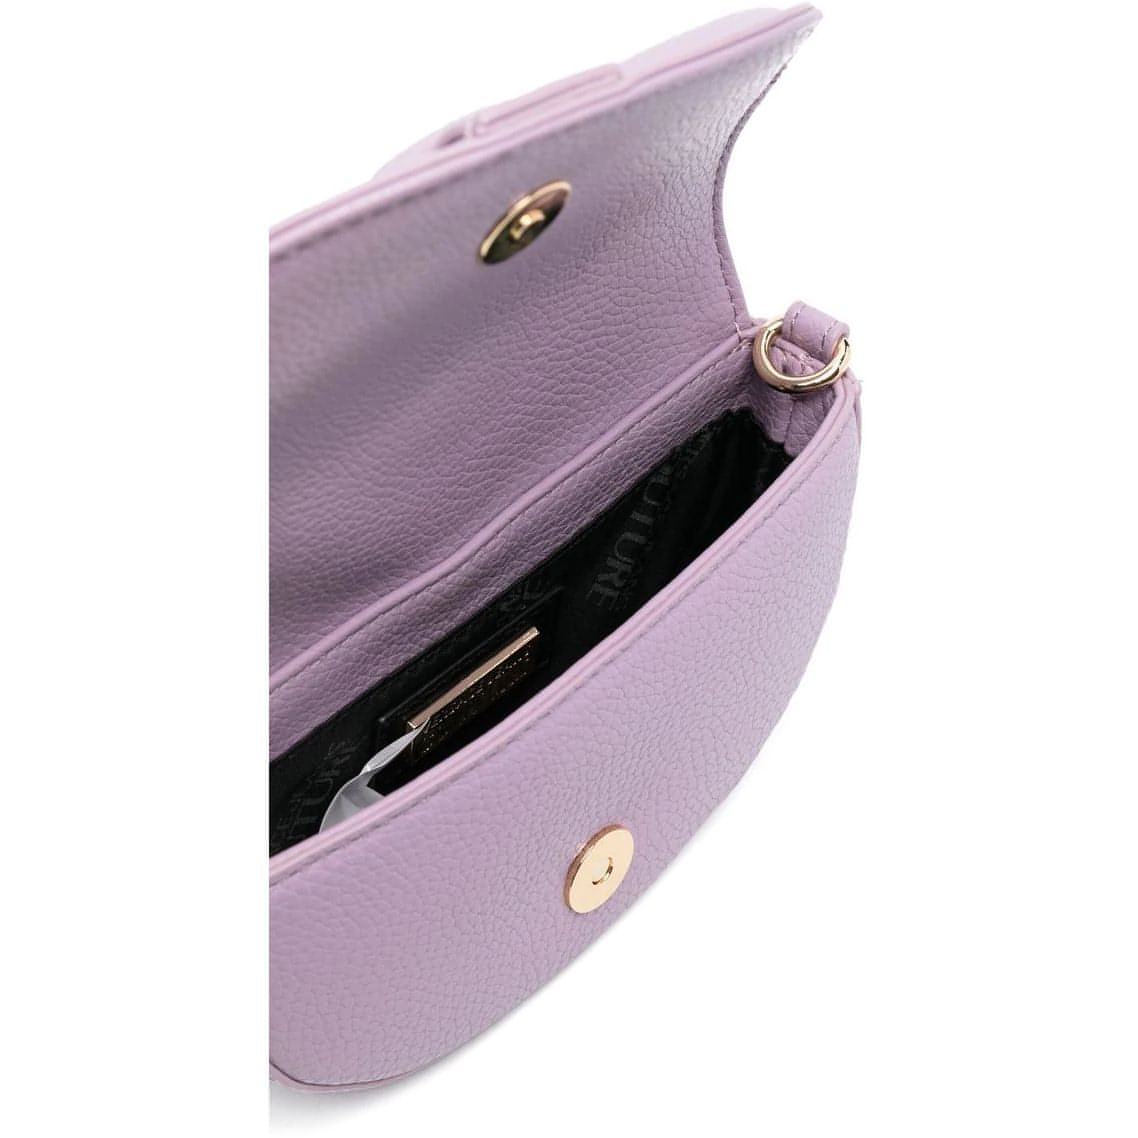 VERSACE JEANS COUTURE moteriška violetinė rankinė per petį Range f - couture crossbody